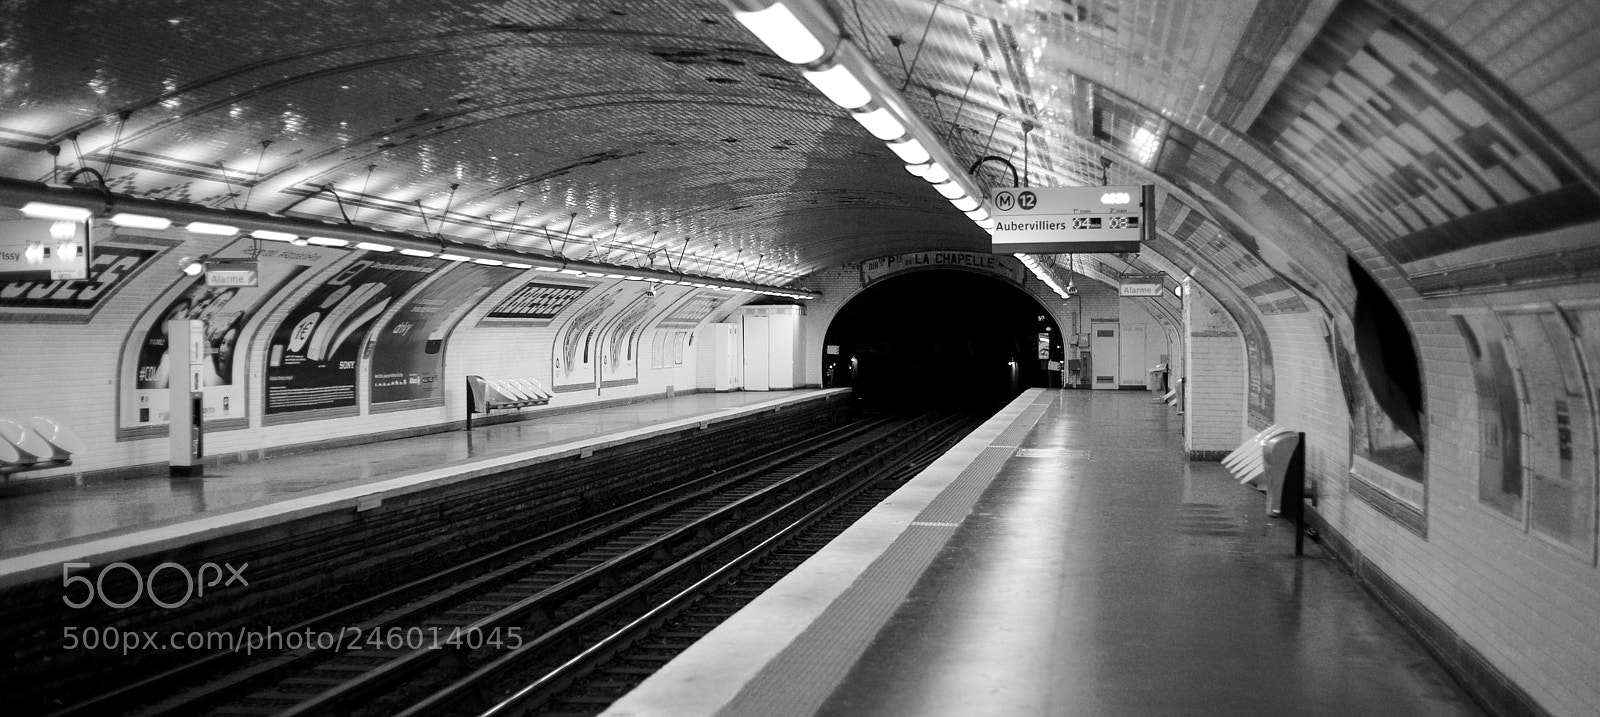 Canon EOS 6D sample photo. Metro in paris photography